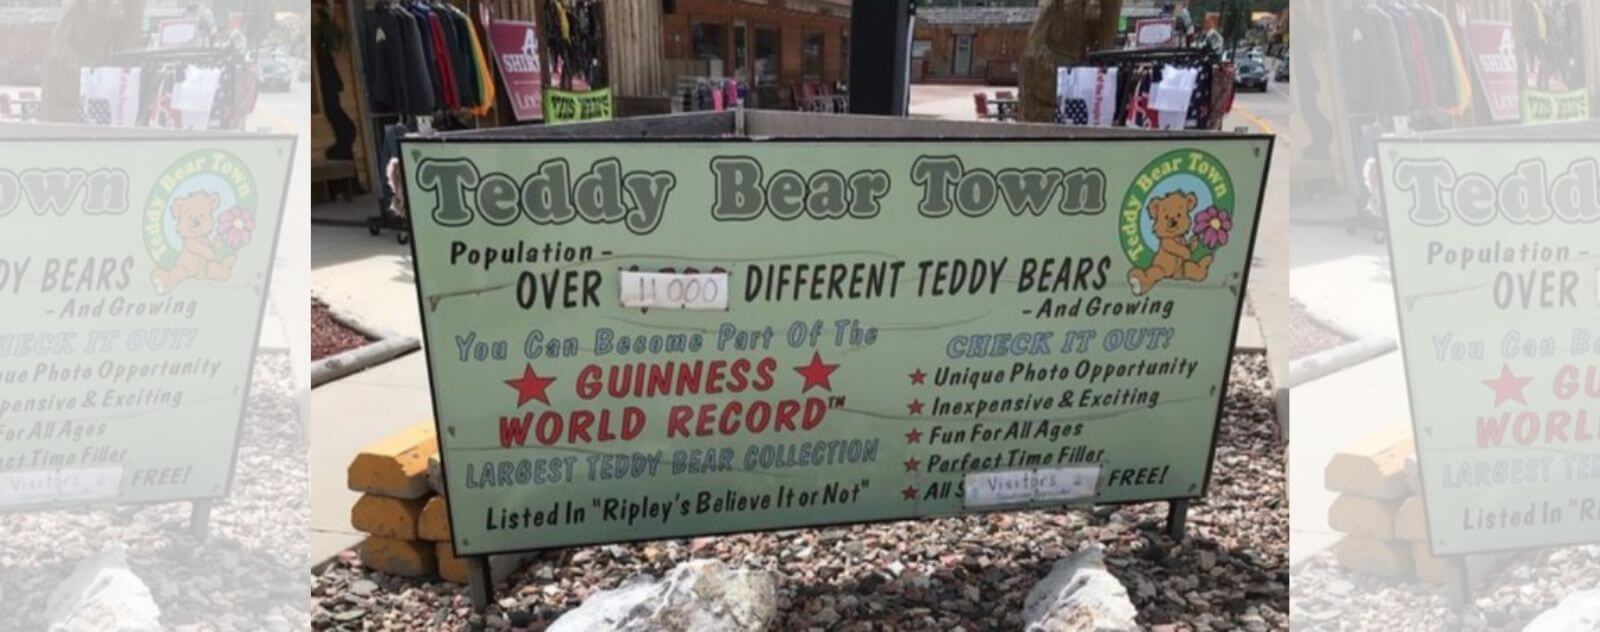 Panneau de Teddy Bear Town avec ses 11 000 Ours en Peluche dans le Guinness World Records